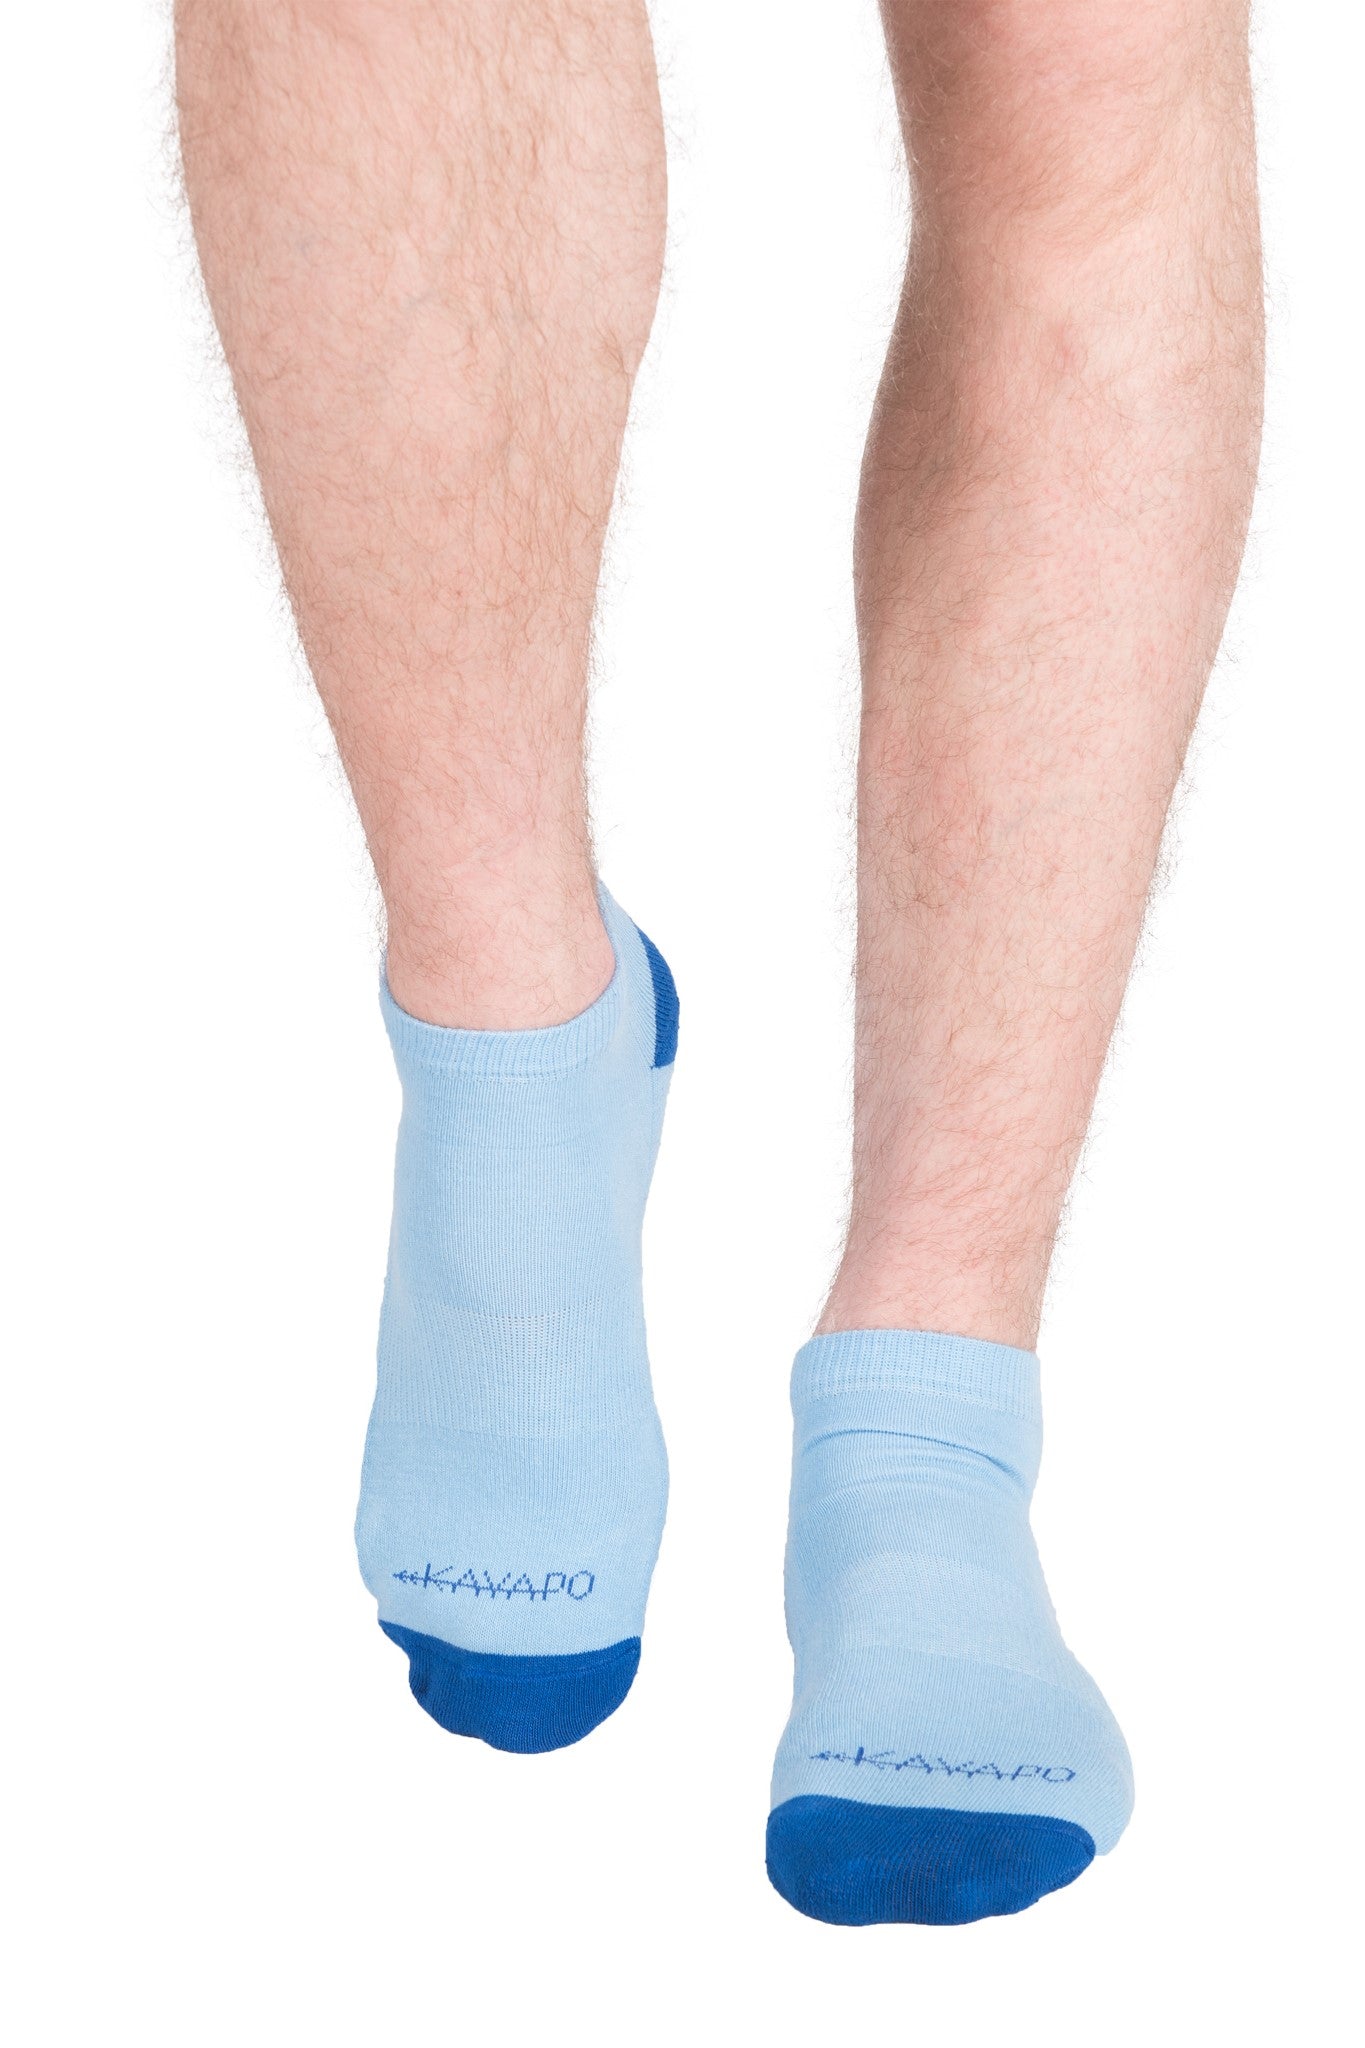 Kayapo Men's Ankle Socks